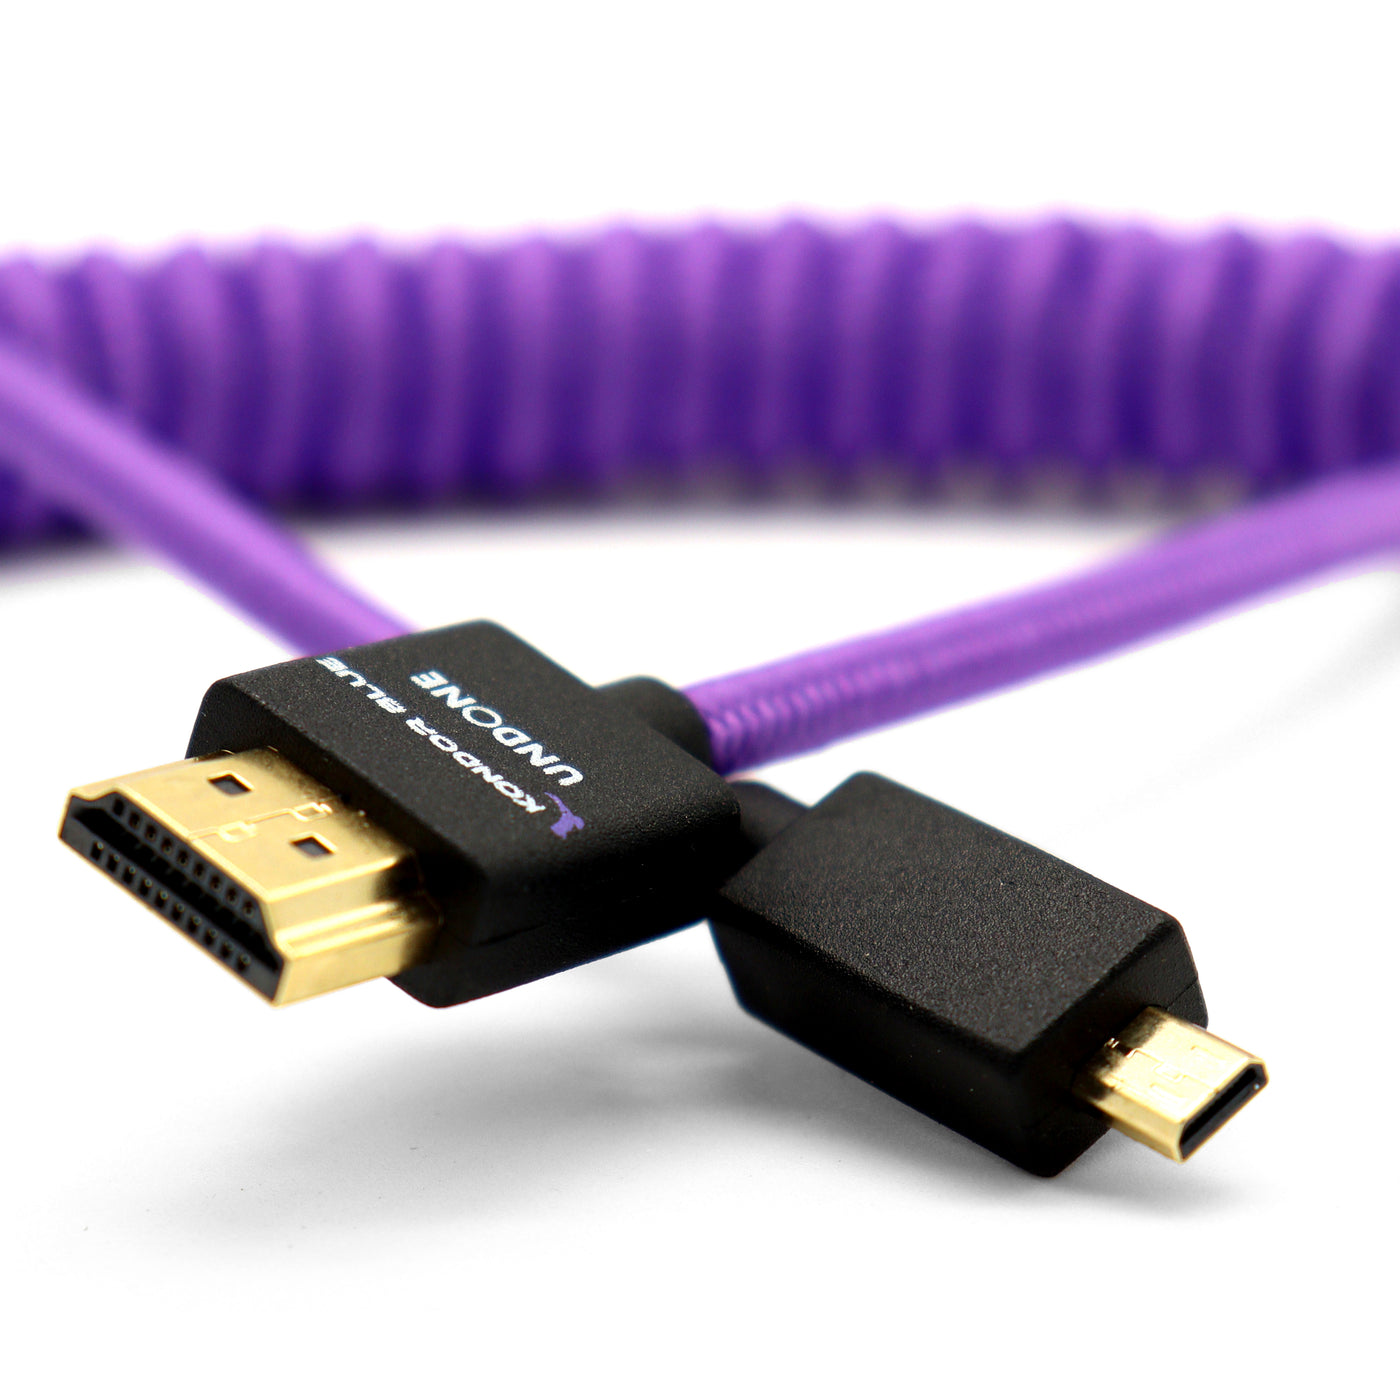 Buy  Kondor Blue KON-MC_FHDMI12R_P Gerald Undone Full HDMI to Right Angle Micro  HDMI Cable 12-24 Coiled (Purple) - Right Angle (R5/R6)